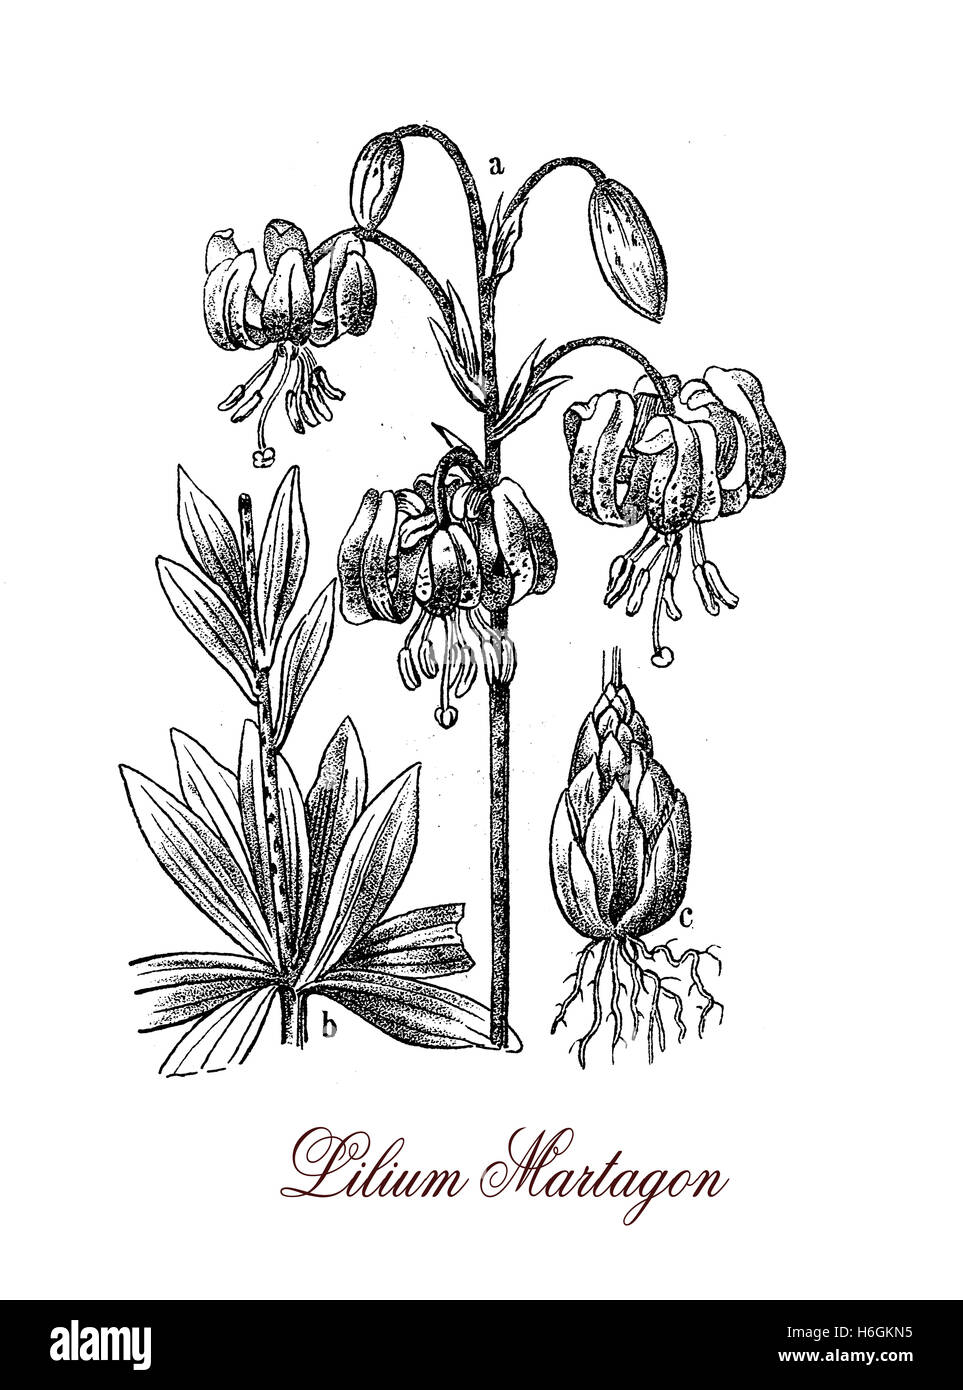 Lilium Martagon oder Martagon-Lilie ist eine Lilie mit zahlreichen duftenden rosa-violetten Blüten, die Pflanze ist sehr giftig für Katzen. Stockfoto